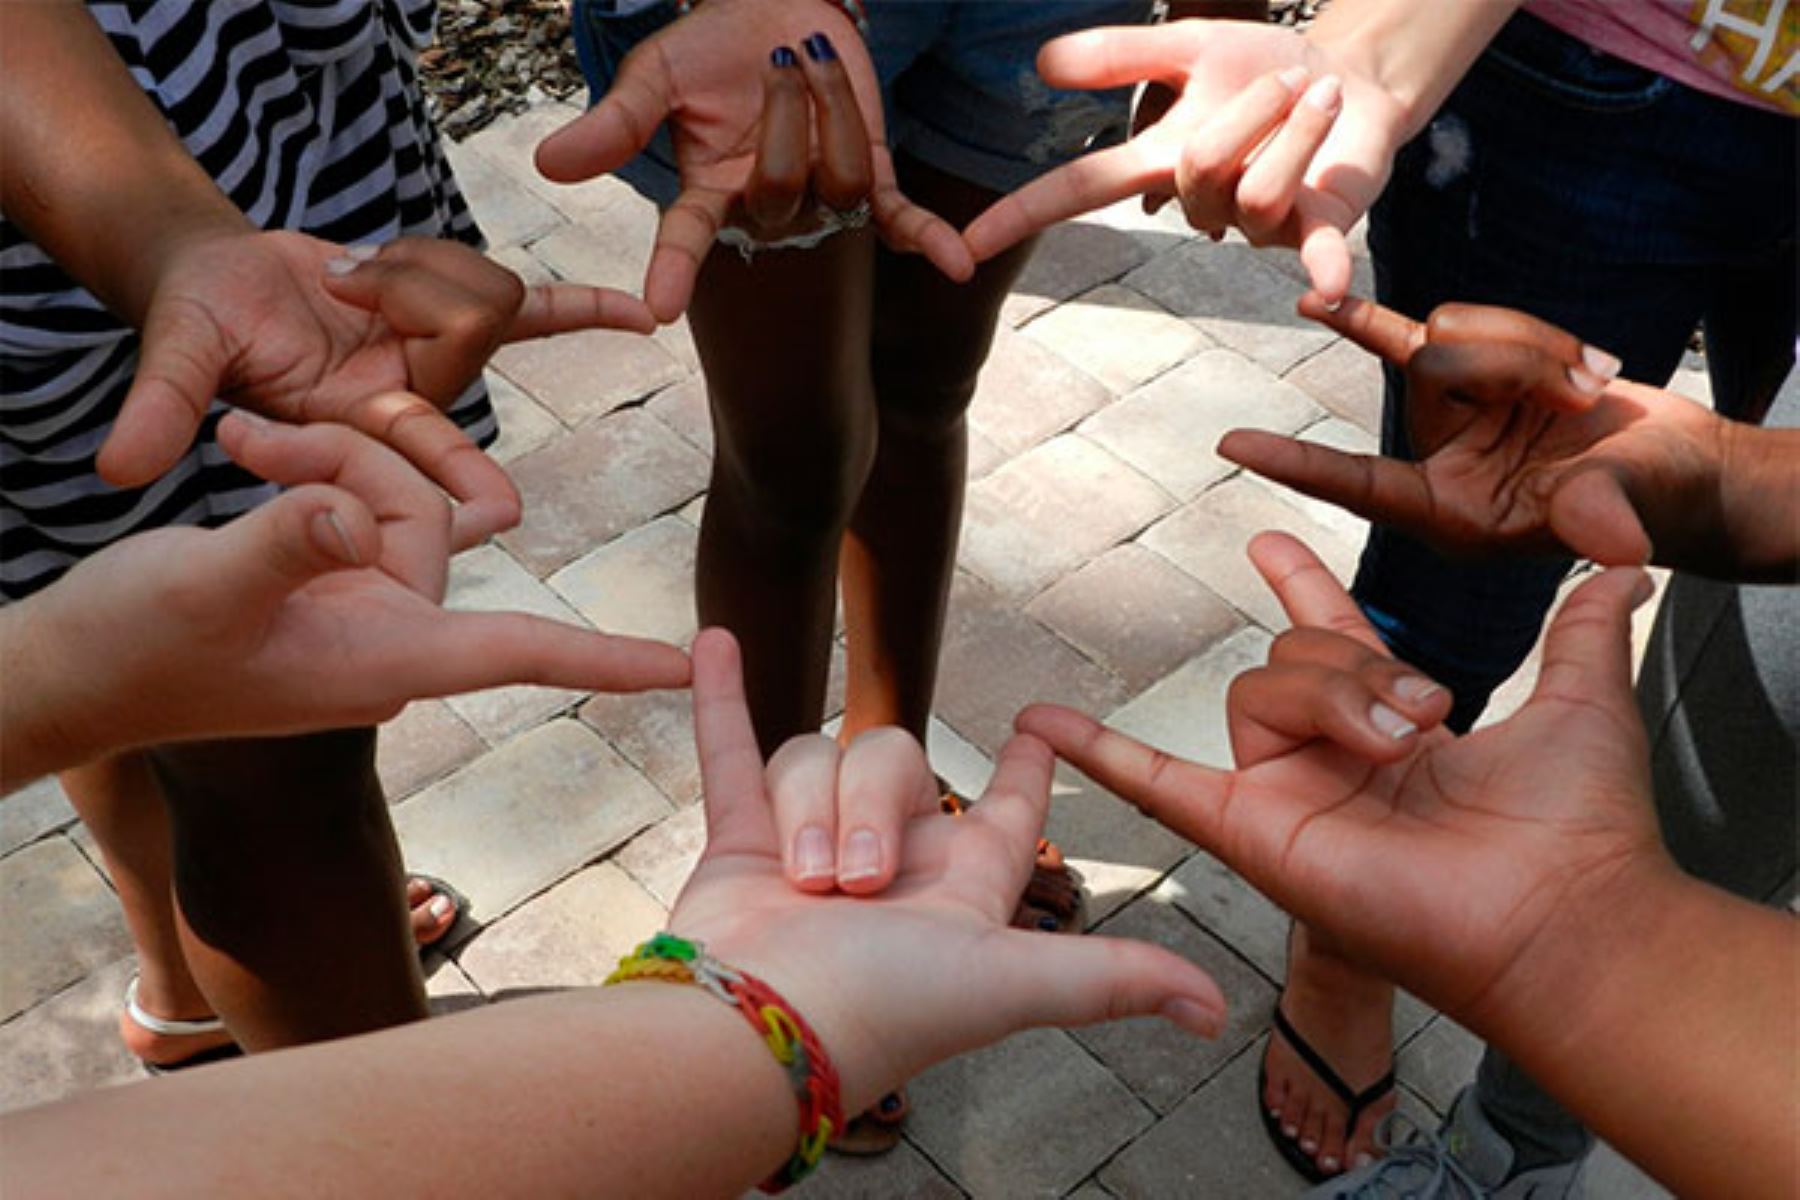 El programa “Señas Que Conectan” de Entel cuenta con 53 colaboradores capacitados en lengua de señas peruanas en 12 ciudades a nivel nacional. ANDINA/Difusión